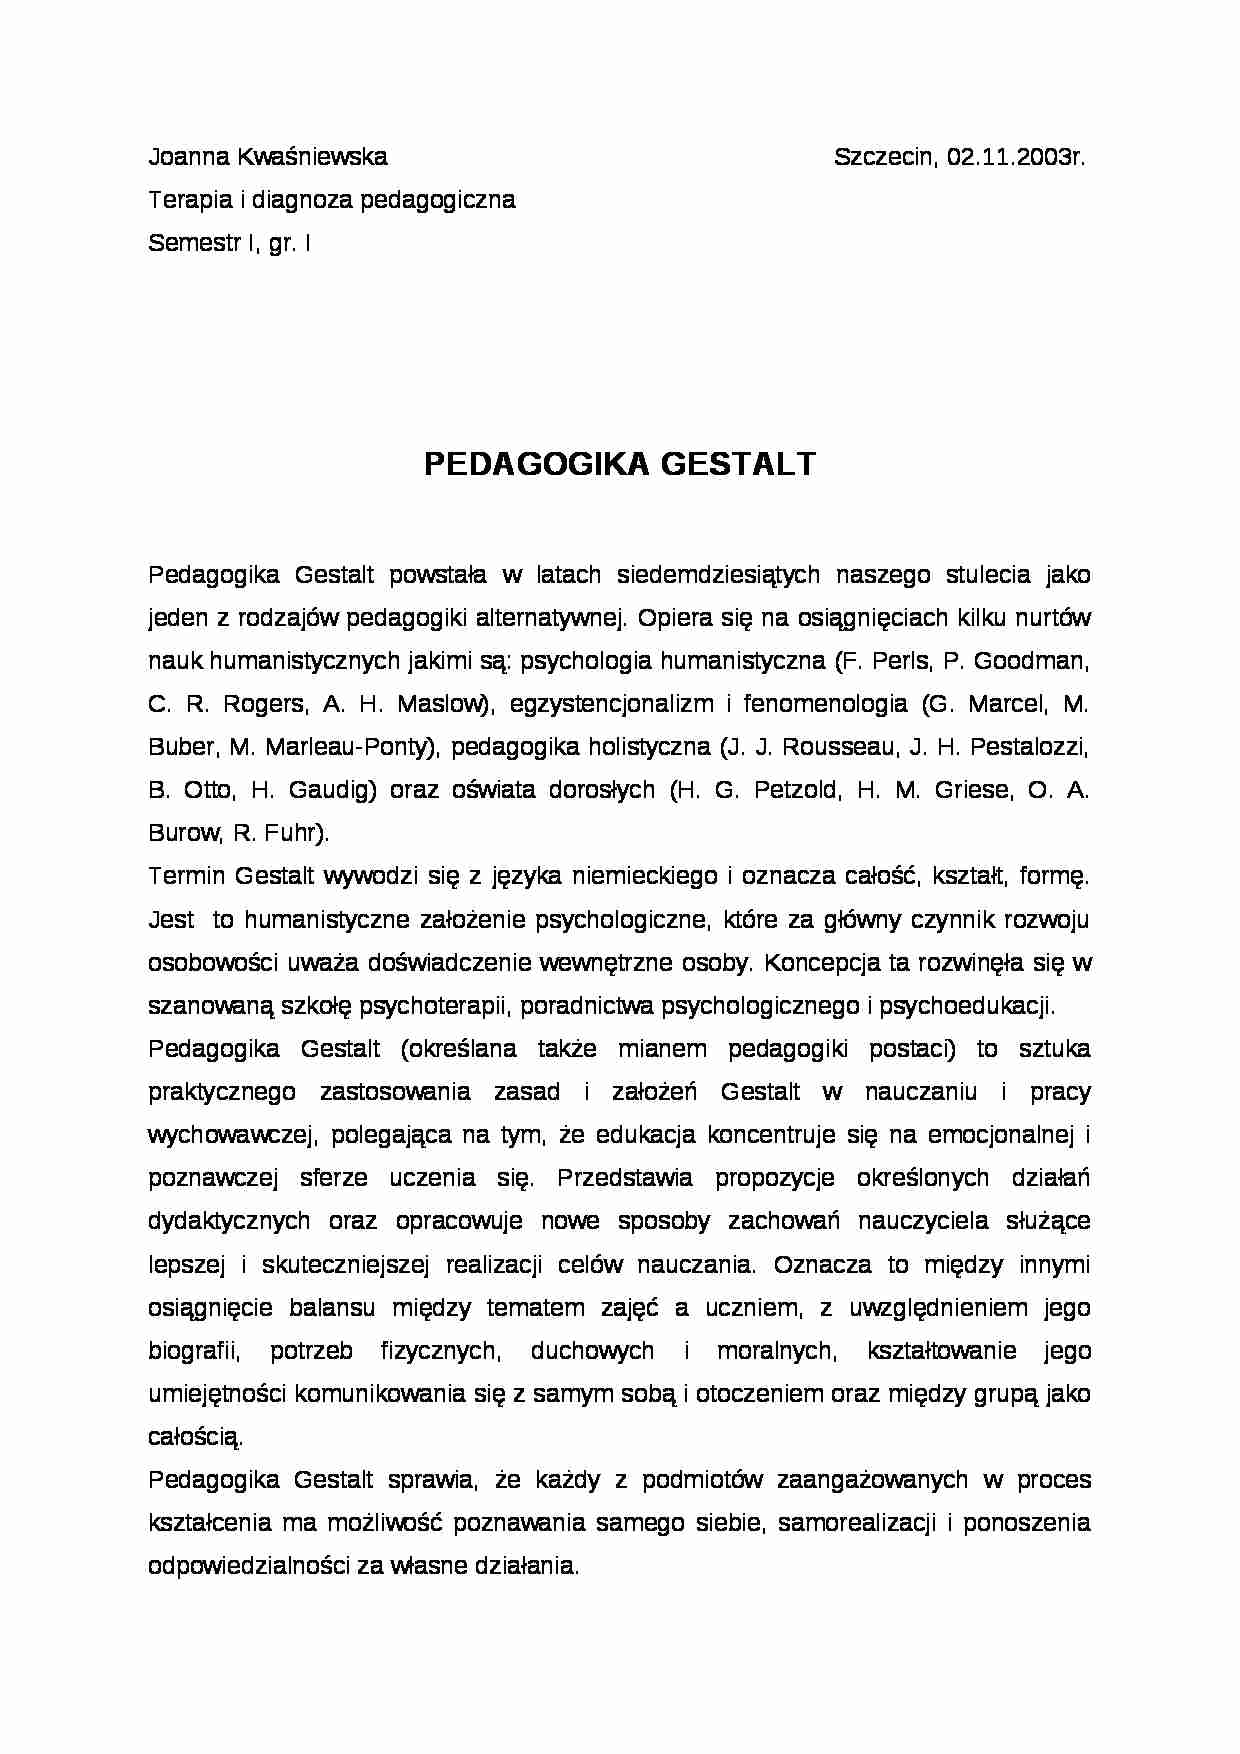 PEDAGOGIKA GESTALT- pedagogika - strona 1